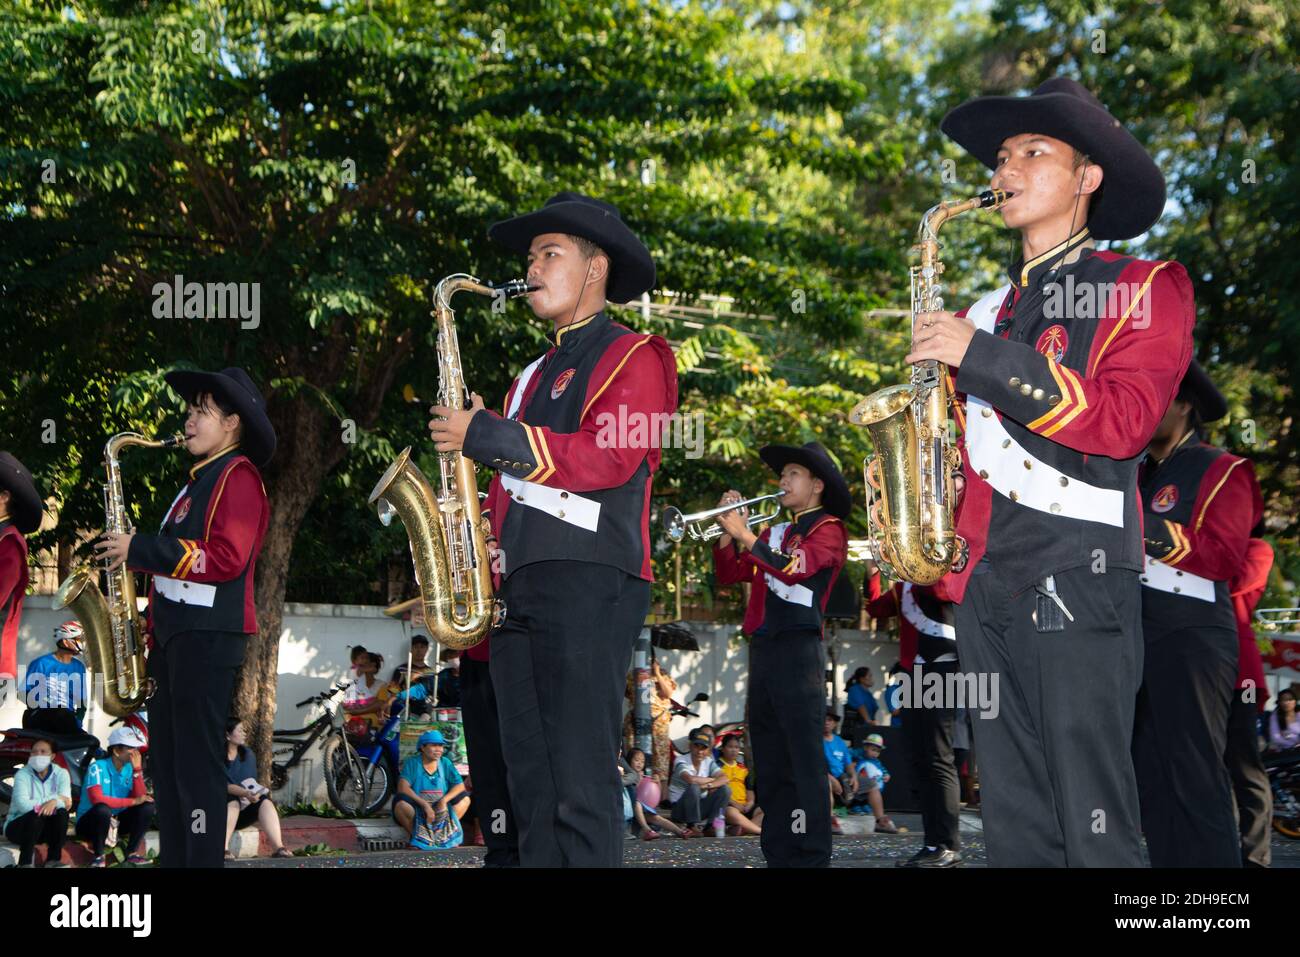 Sfilata di Marching Band mentre si esibisce per strada, i partecipanti prendono parte alla celebrazione della tradizione internazionale di Pook Xiao. Foto Stock